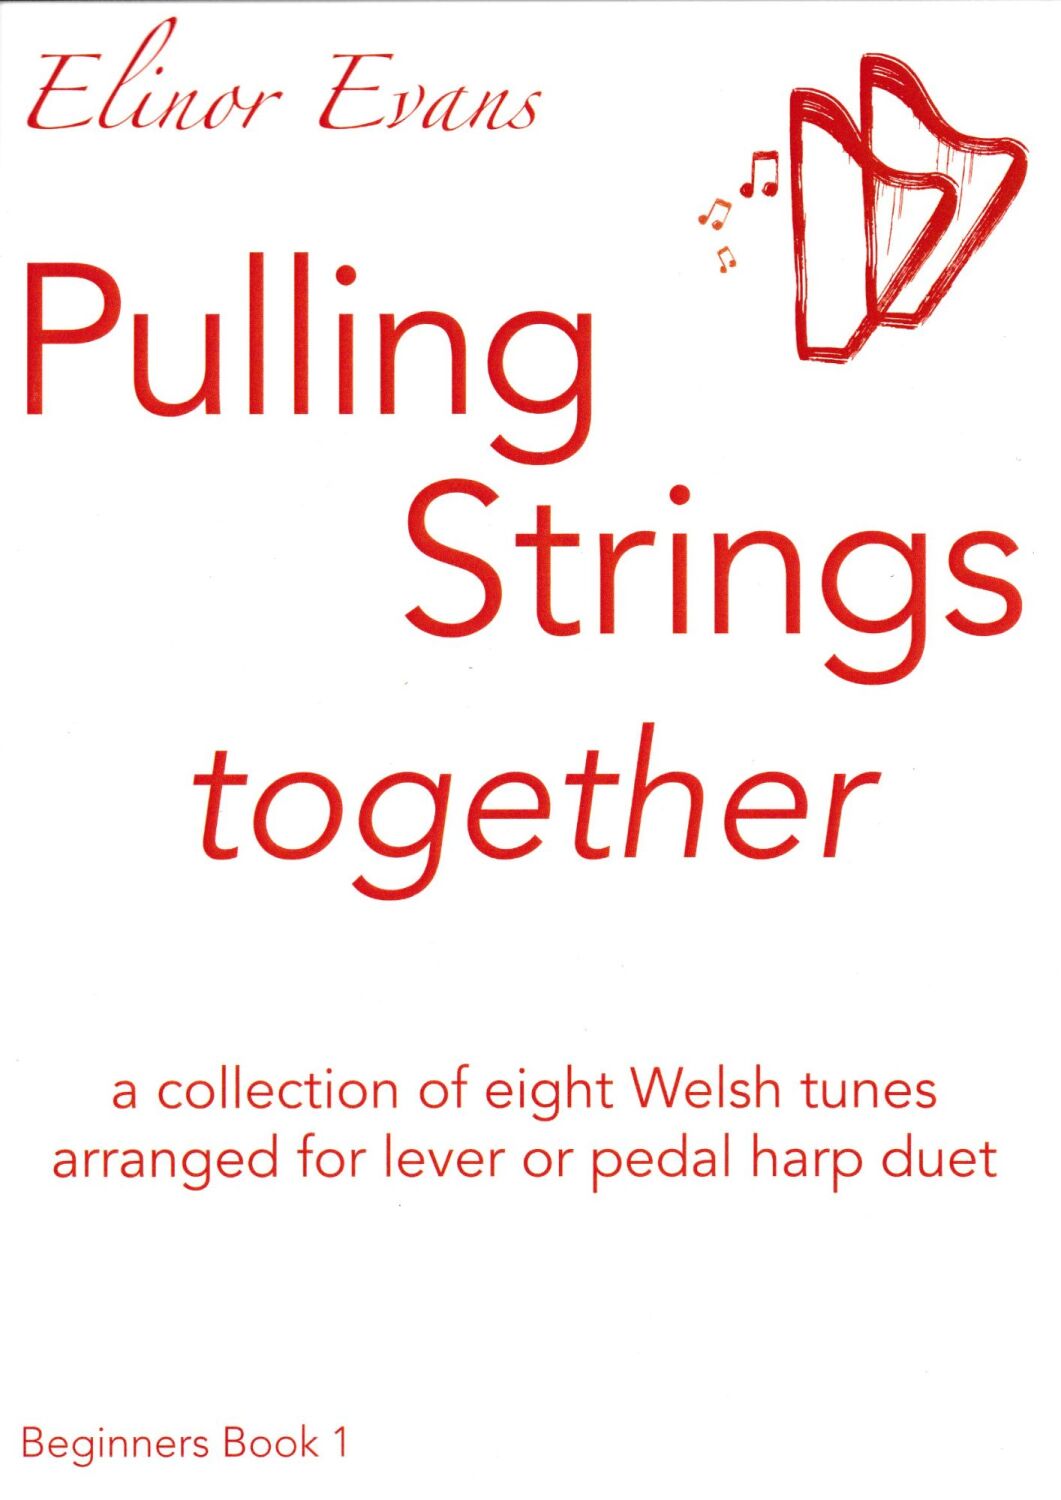 Pulling Strings Together - Beginners Book 1 - Elinor Evans